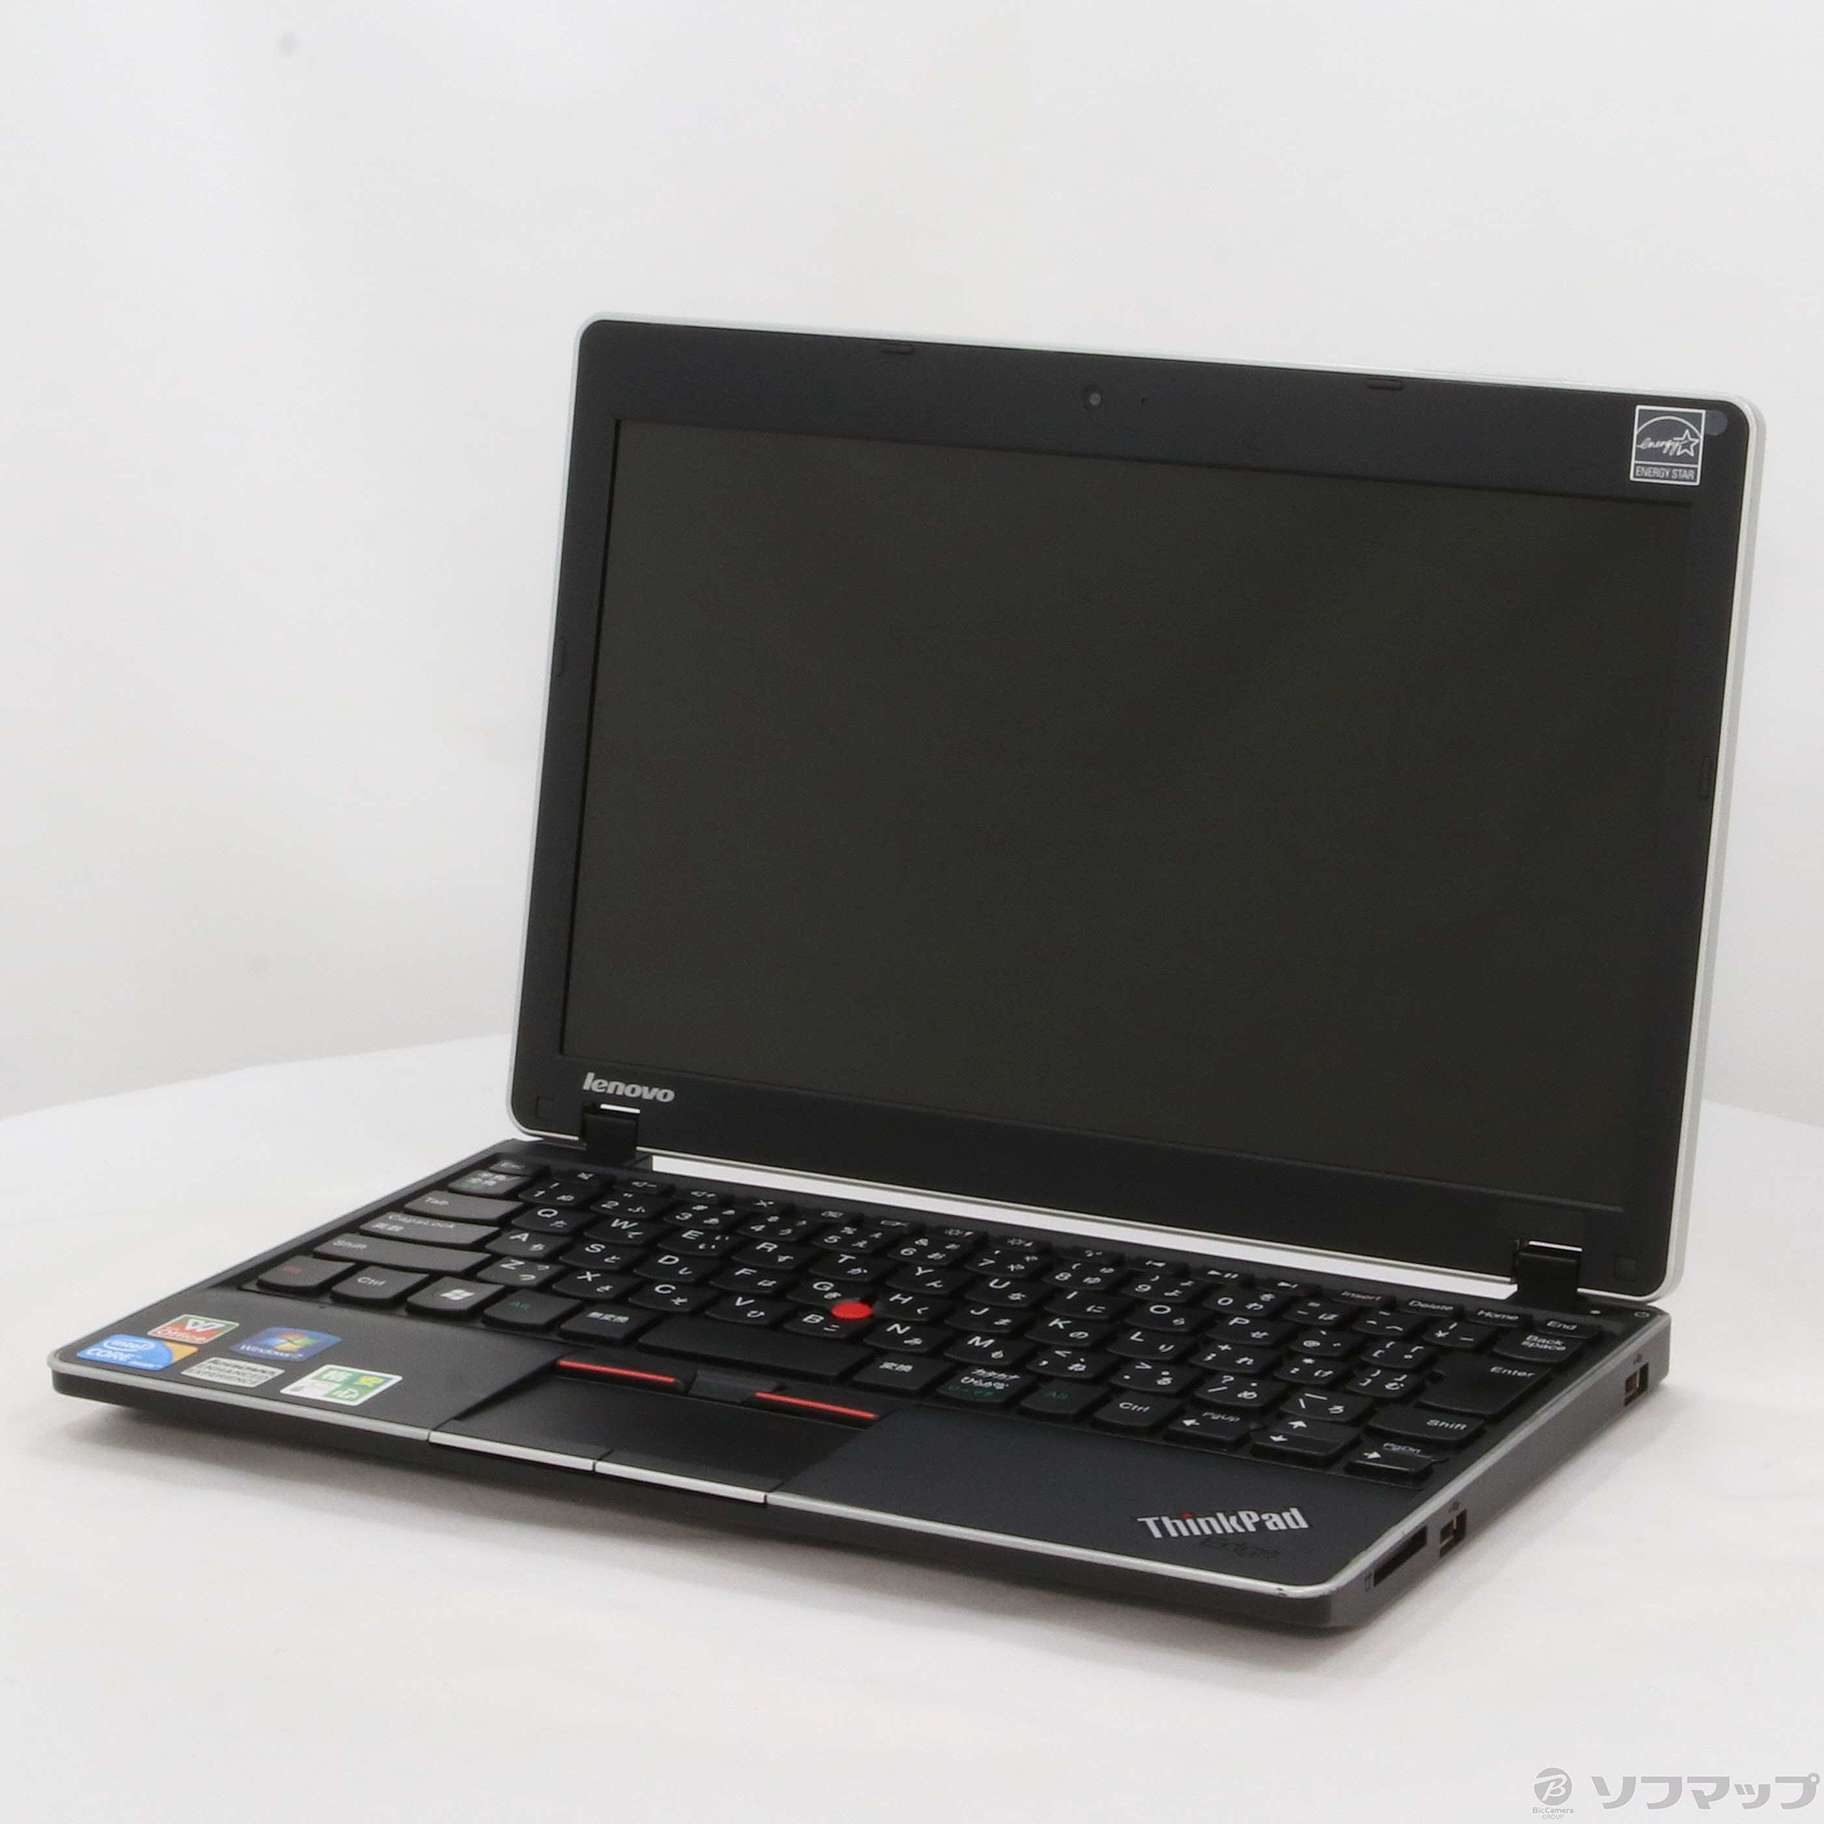 2022年春の 中古:star:?Lenovo PC/タブレット ThinkPad:star:?ノートパソコン Kokunai Zaiko